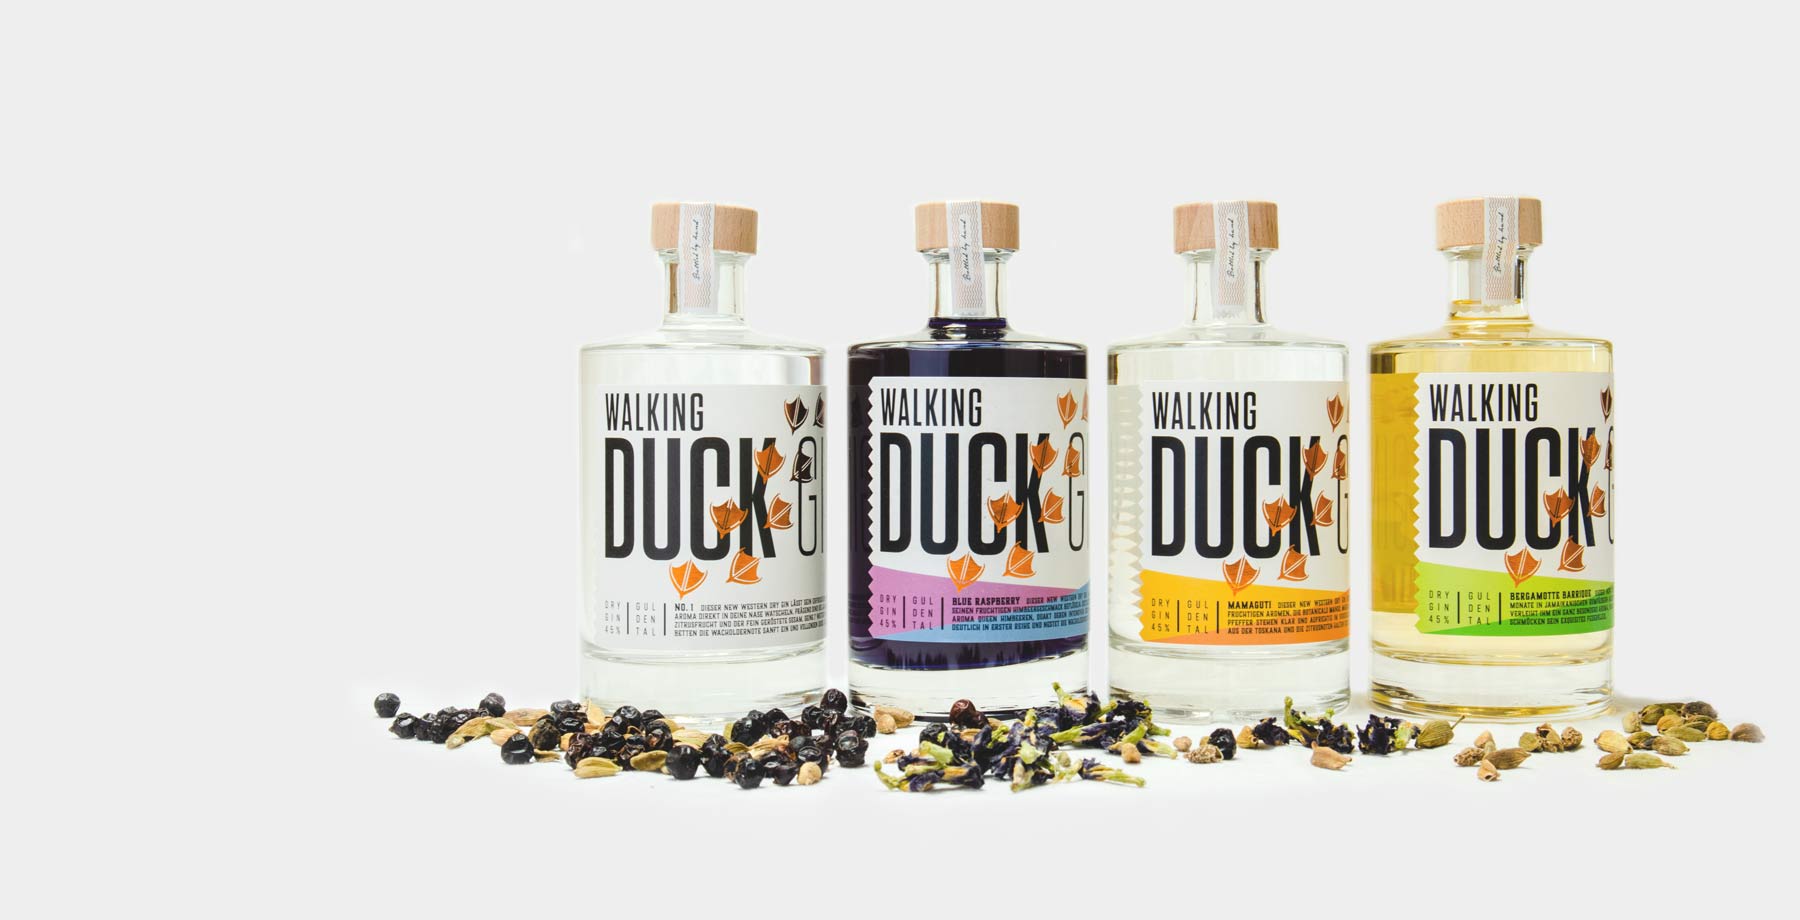 Walking Duck Gin Produktfotografie und Corporate Design Kampagne Webdesign